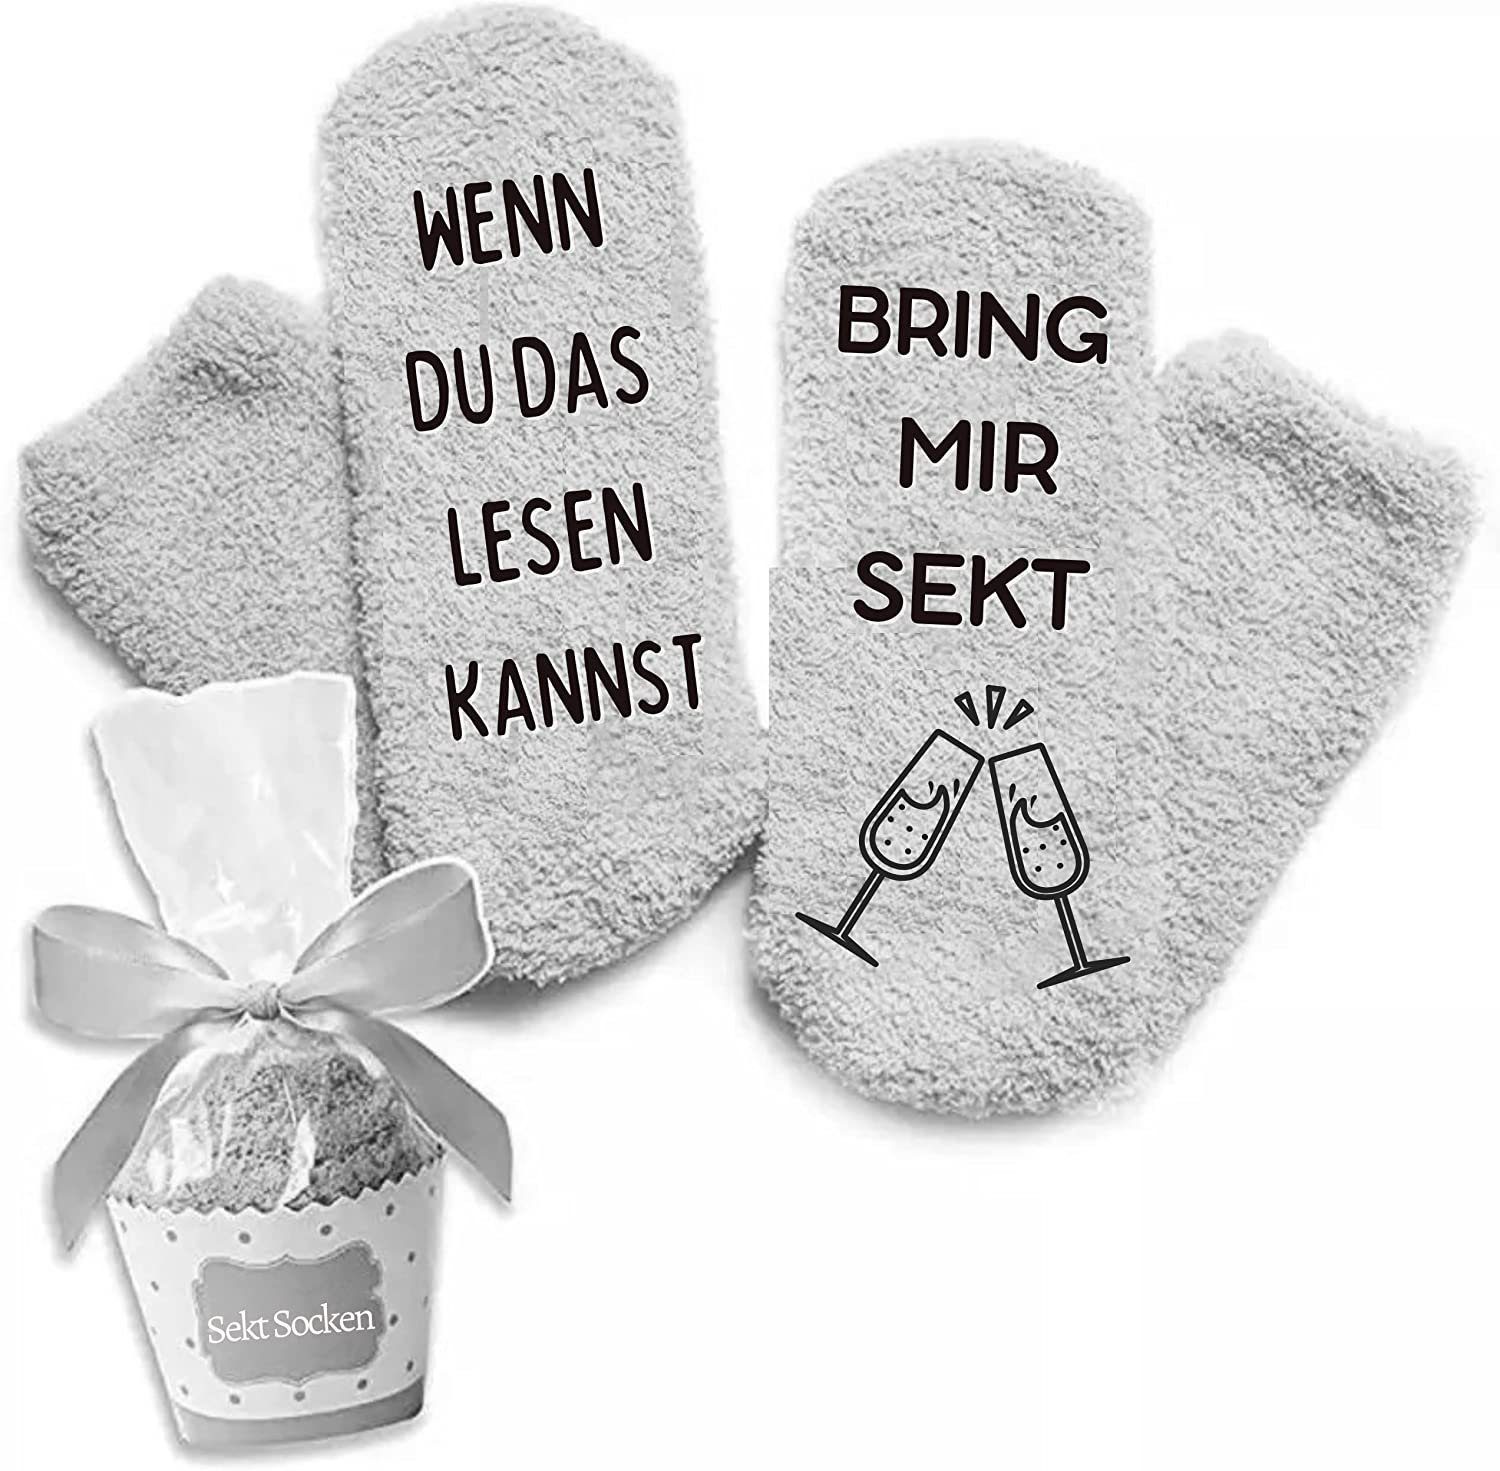 Rocking Socks ABS-Socken Geschenk Socken für Frauen und Männer Wenn du das lesen kannst Socken